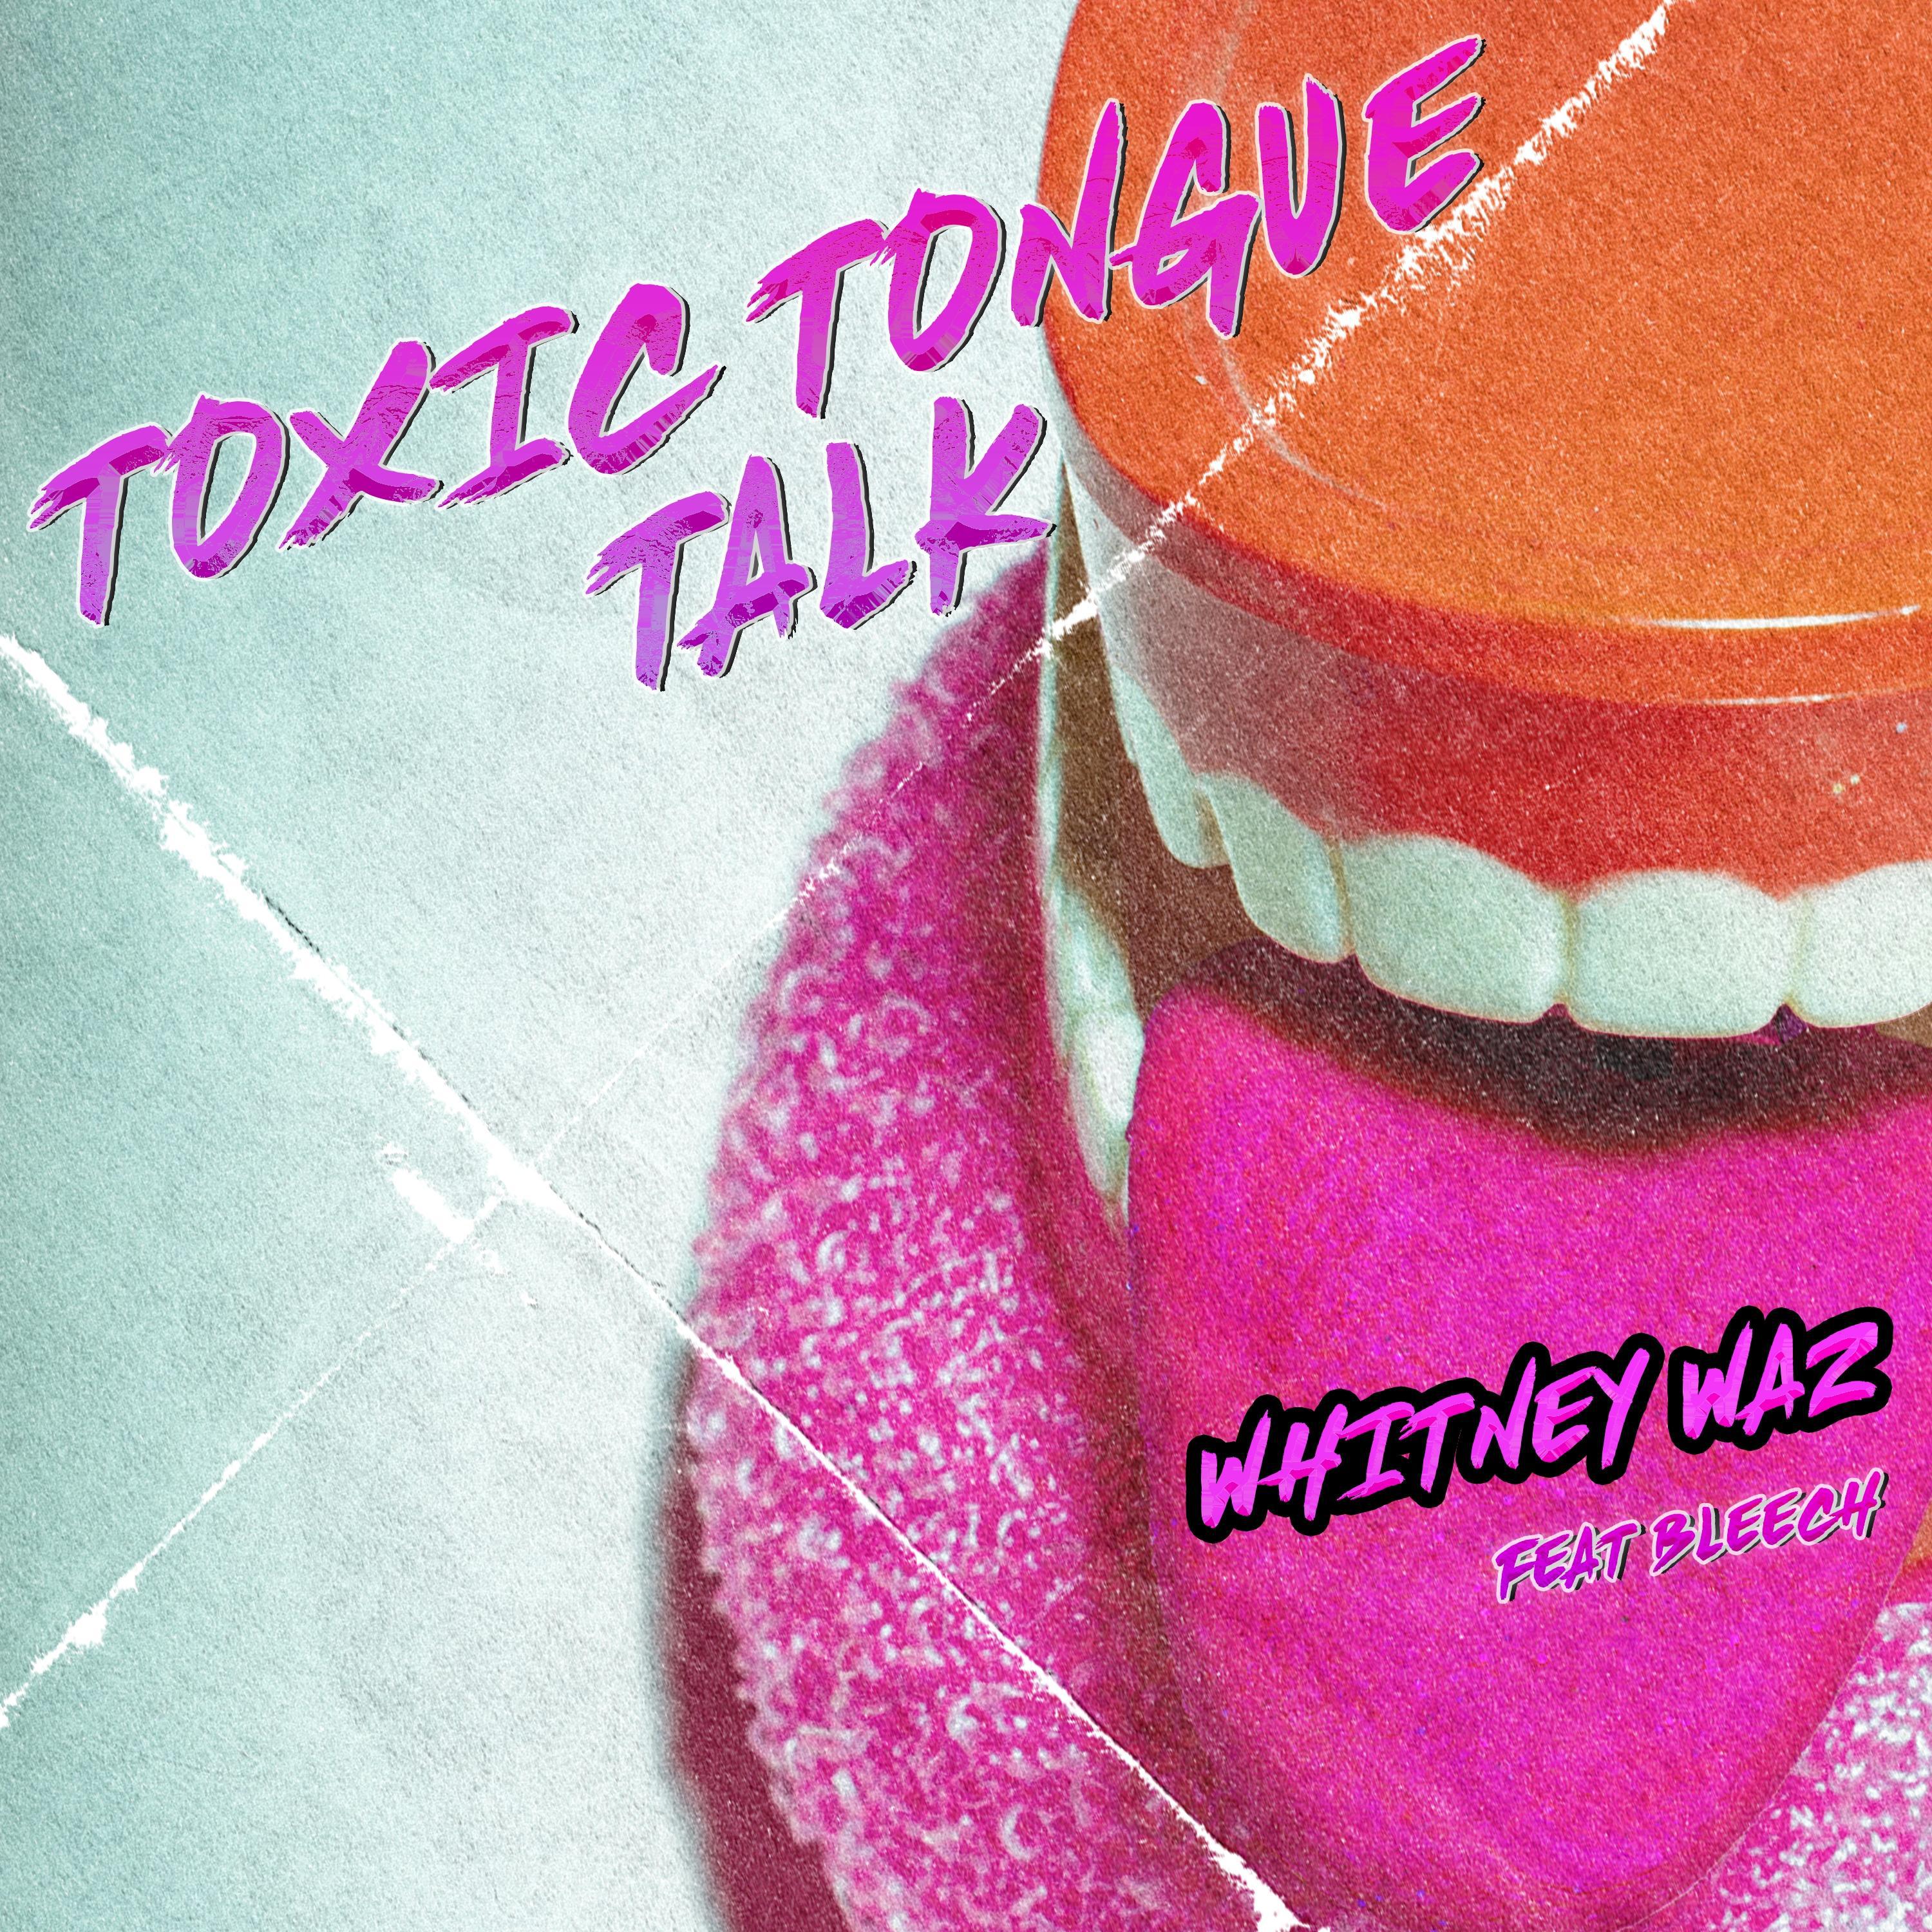 Whitney Waz - Toxic Tongue Talk (feat. BLEECH)